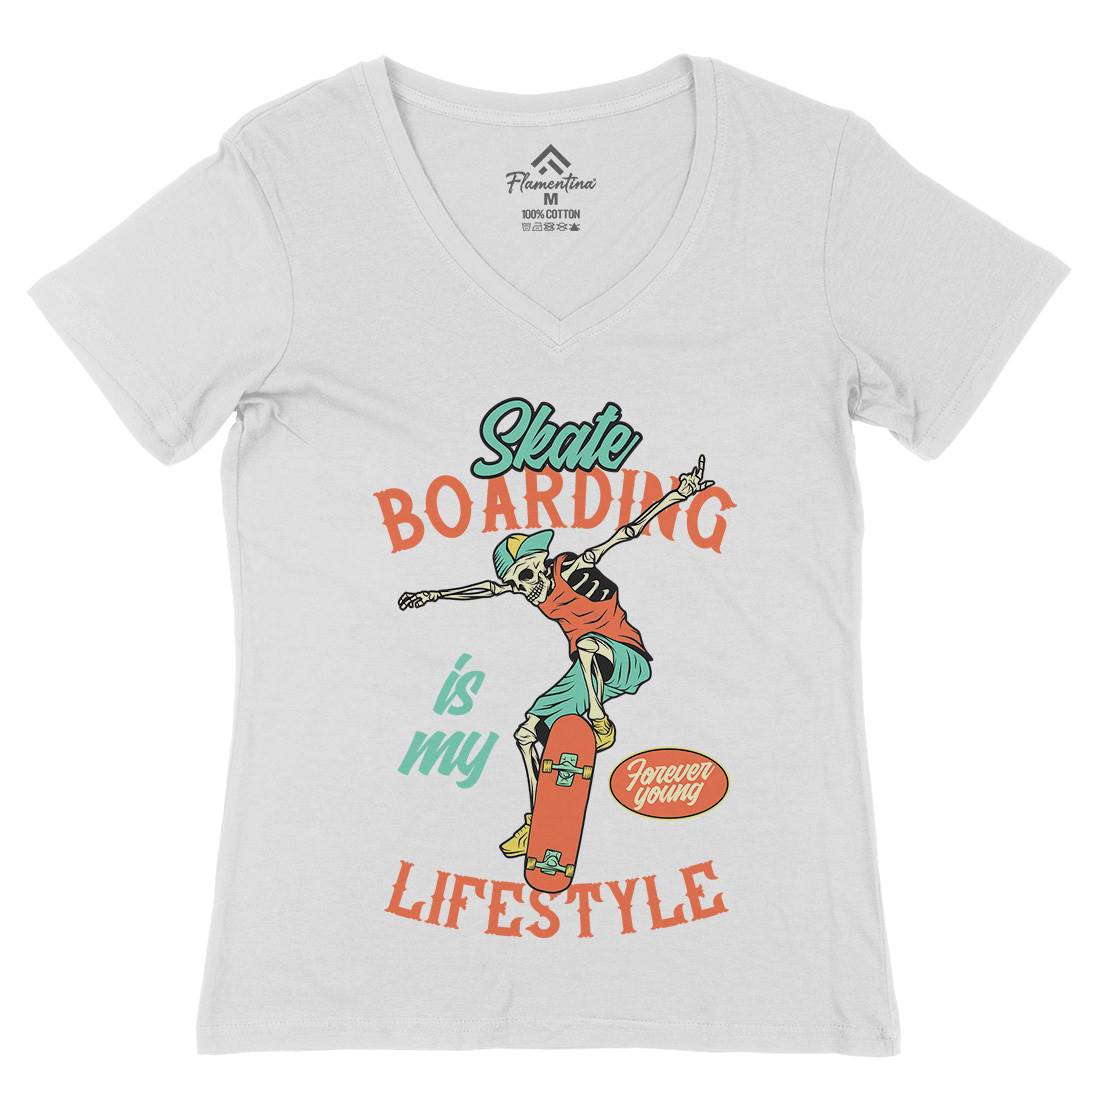 Skateboarding Lifestyle Womens Organic V-Neck T-Shirt Skate D976